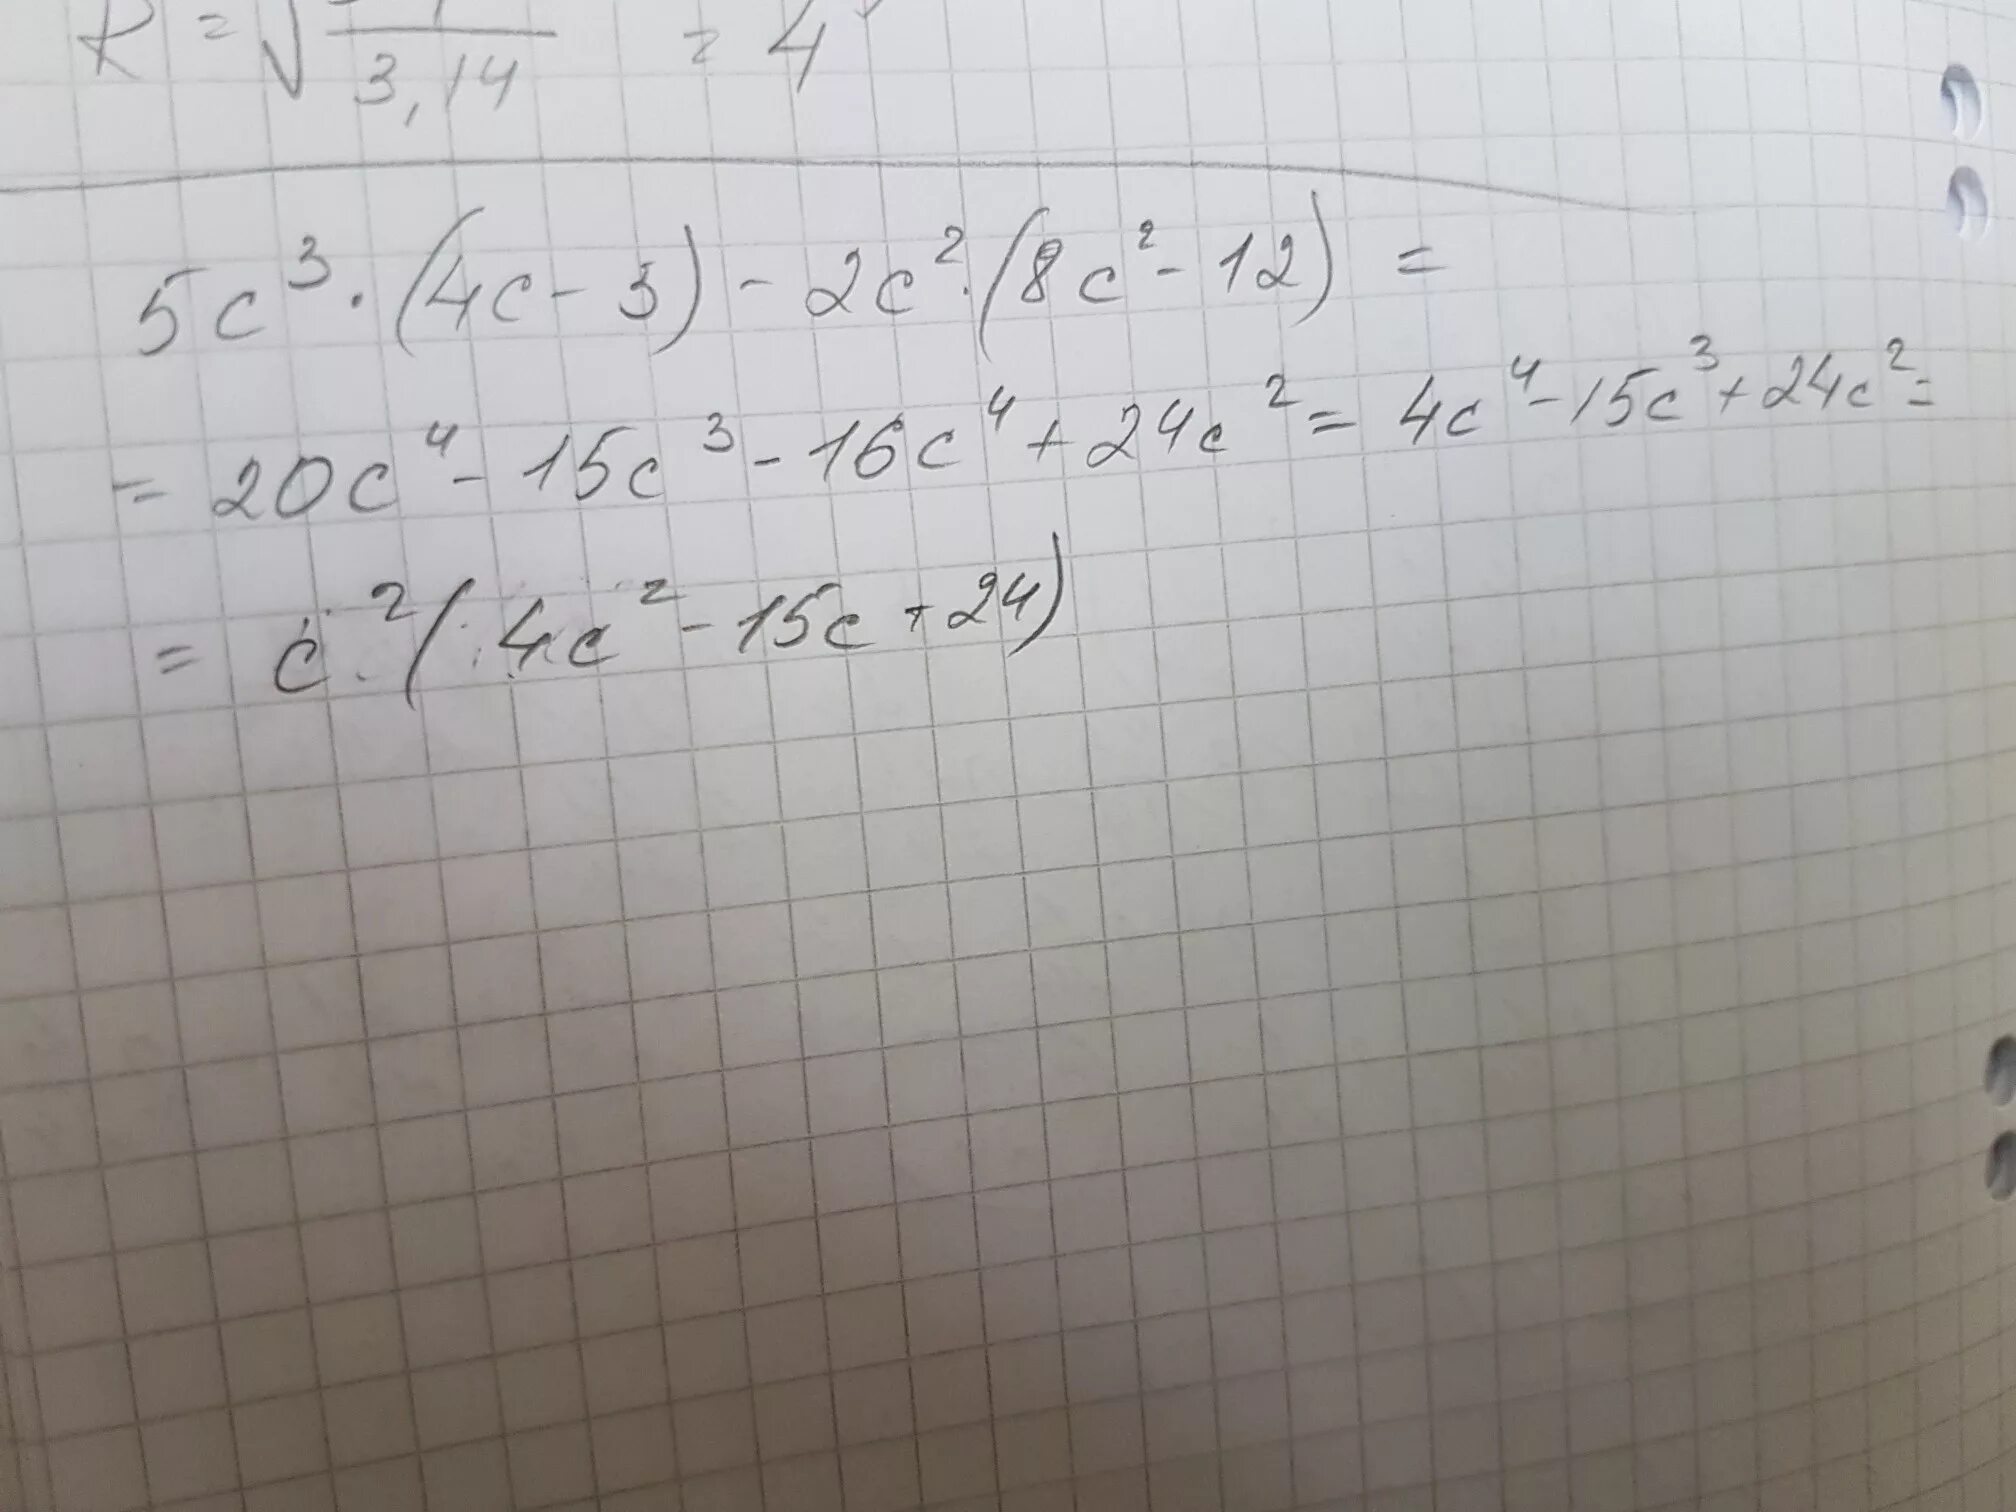 С 3 2 5с. Упростите выражение (2с-6) (8с+5)-(5с+2)(5с-2). (2a+3)(2a-3). 2.5 3.5. 2/4-3/4.